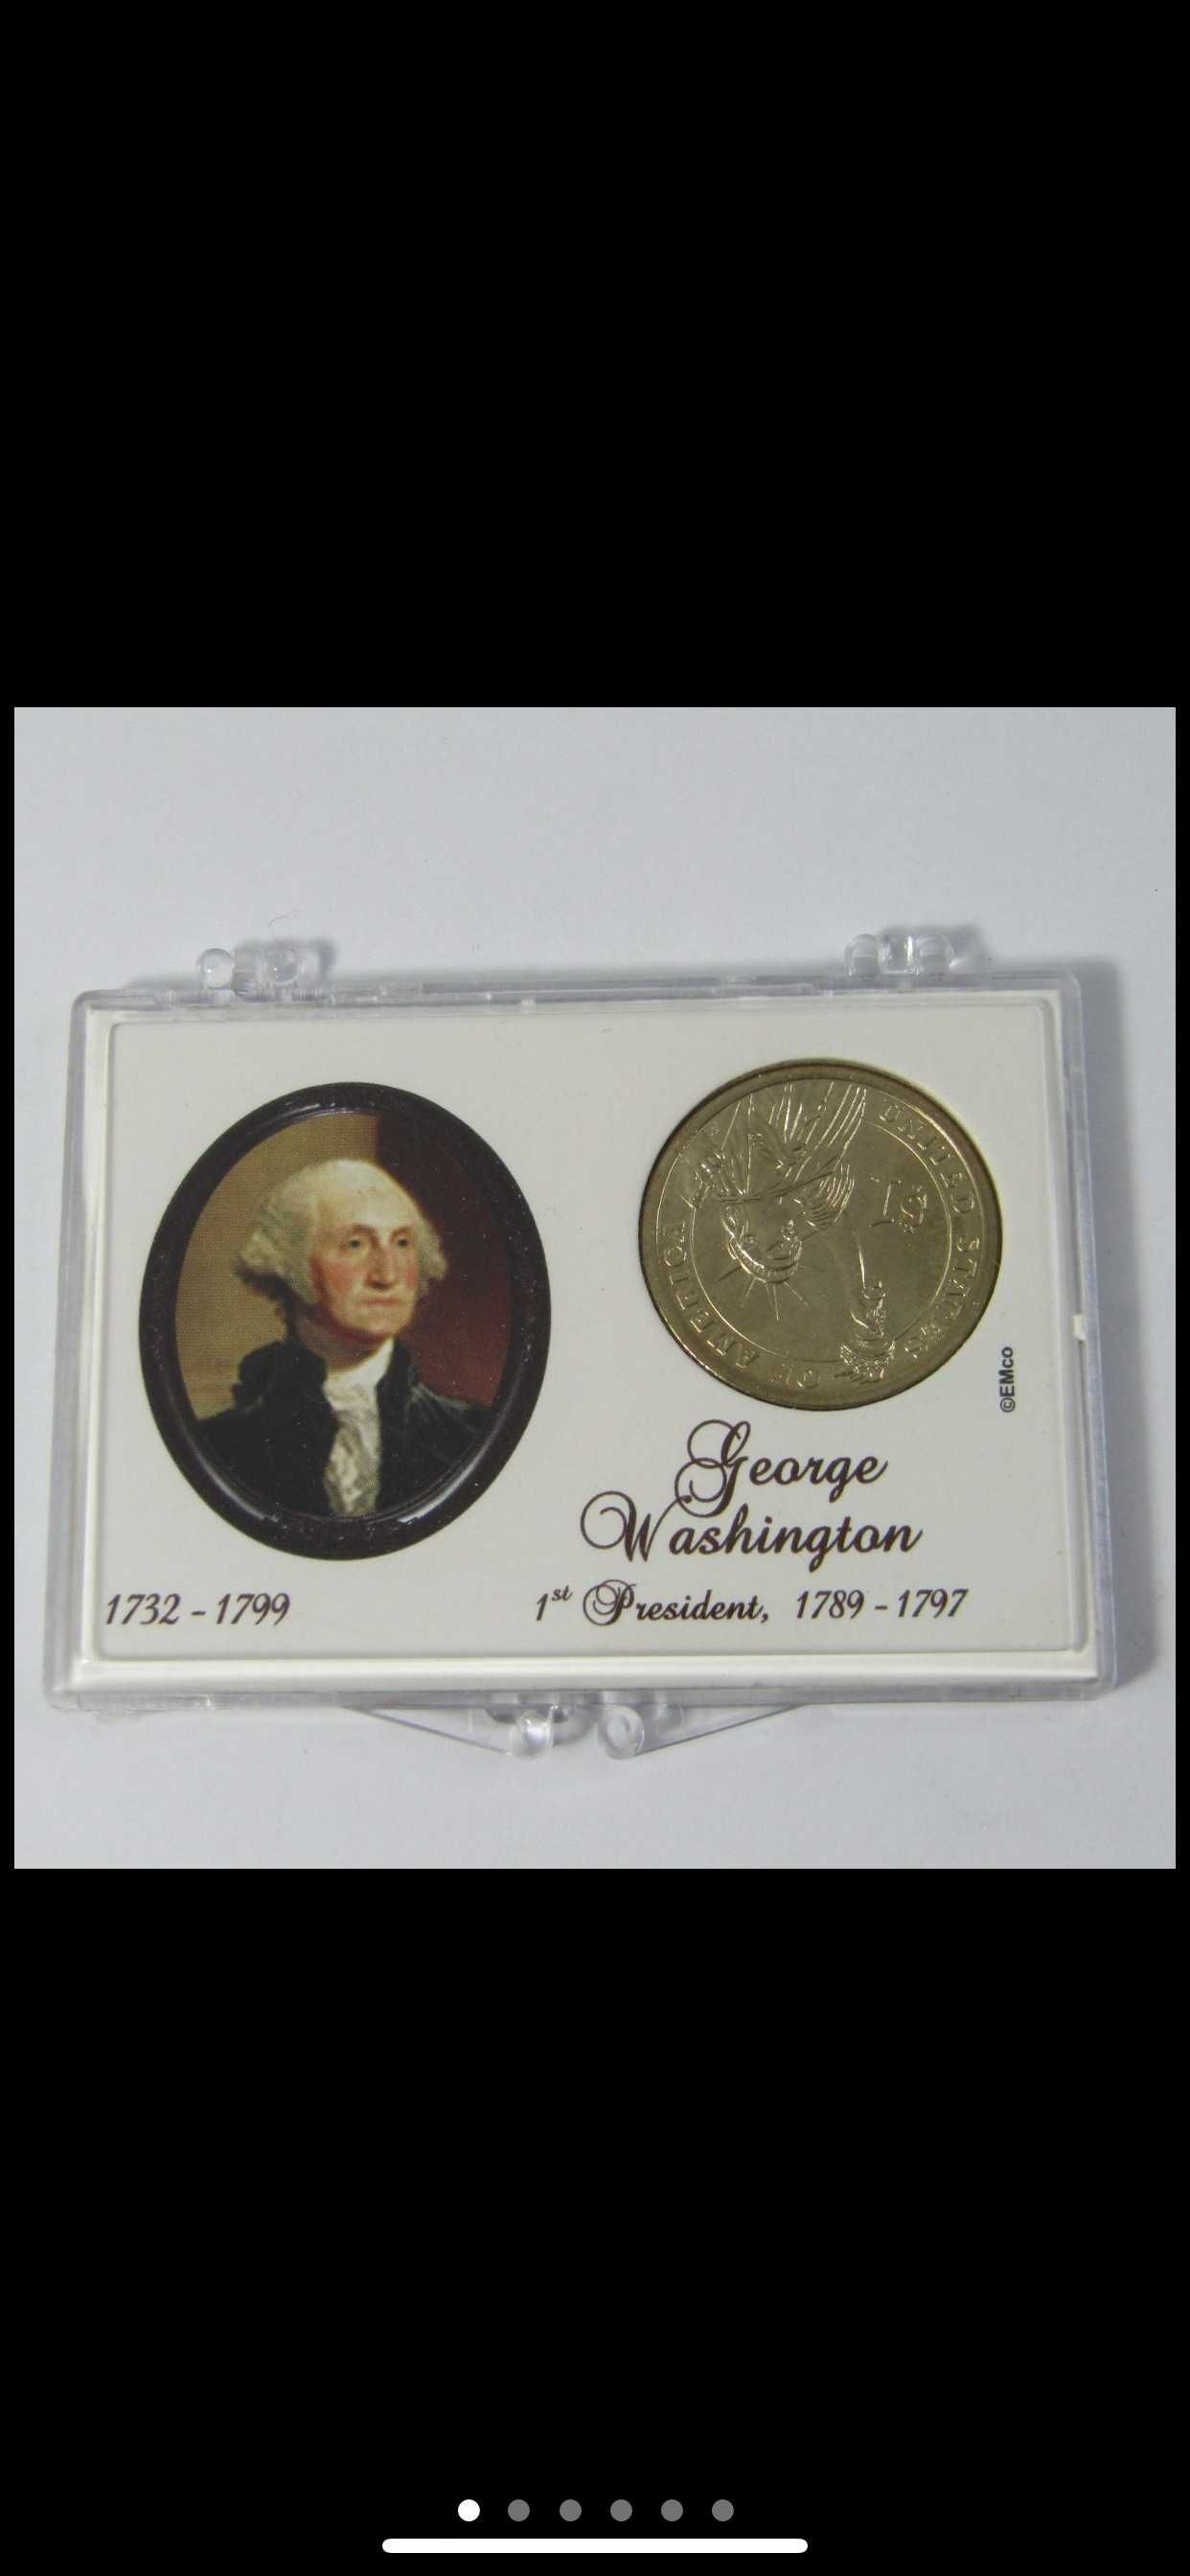 USA 2007 George Washington Quarter Dollar in a presentation folder